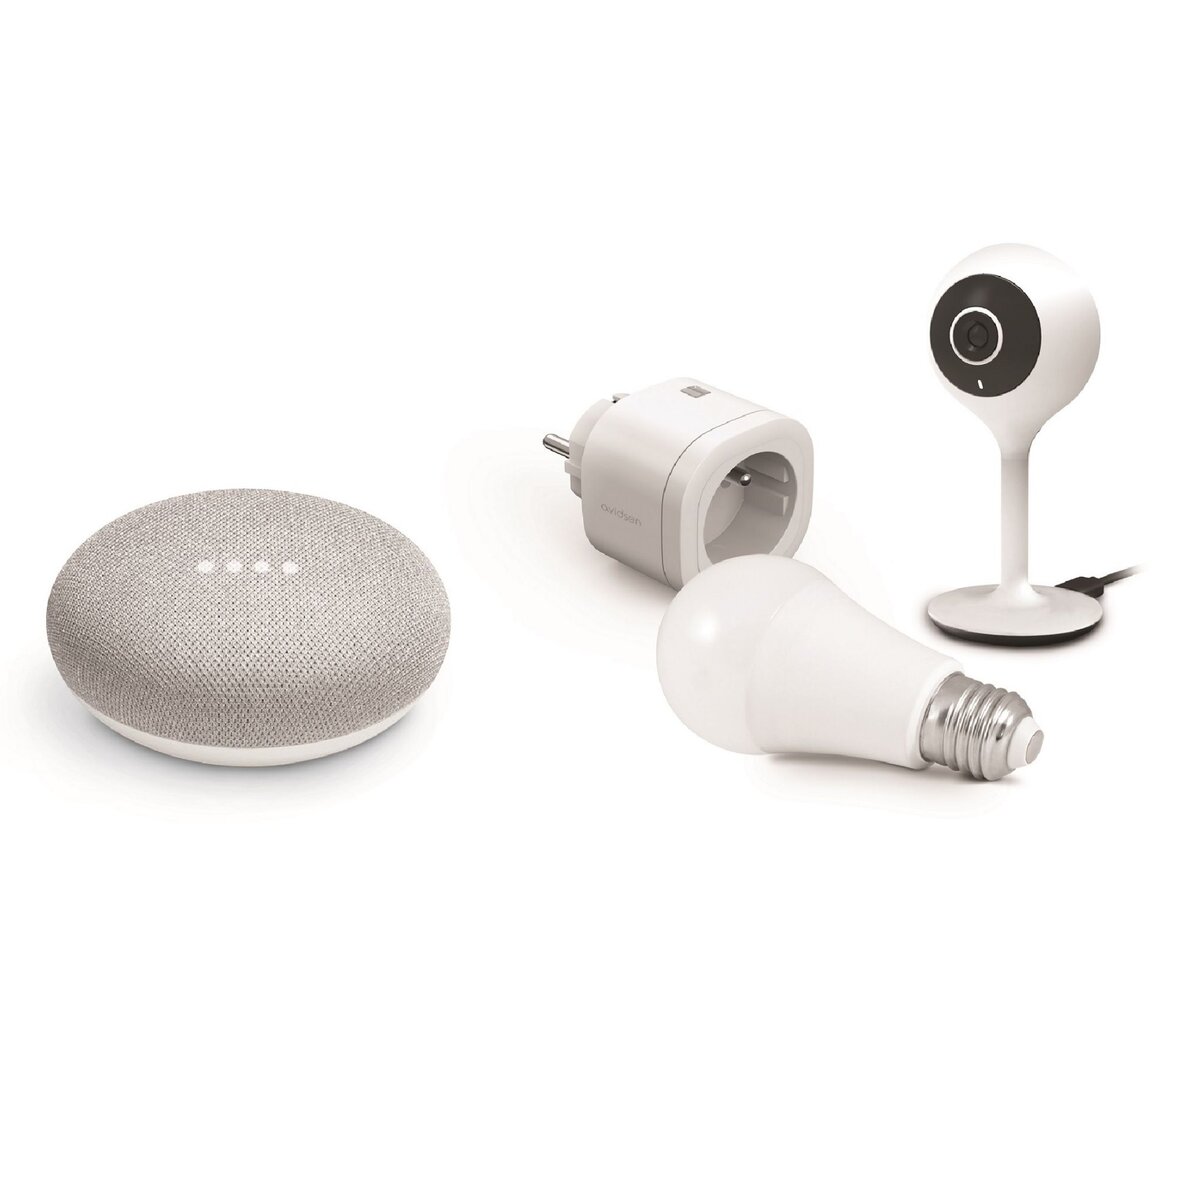 AVIDSEN Kit de démarrage domotique Smart Home avec Google Assistant